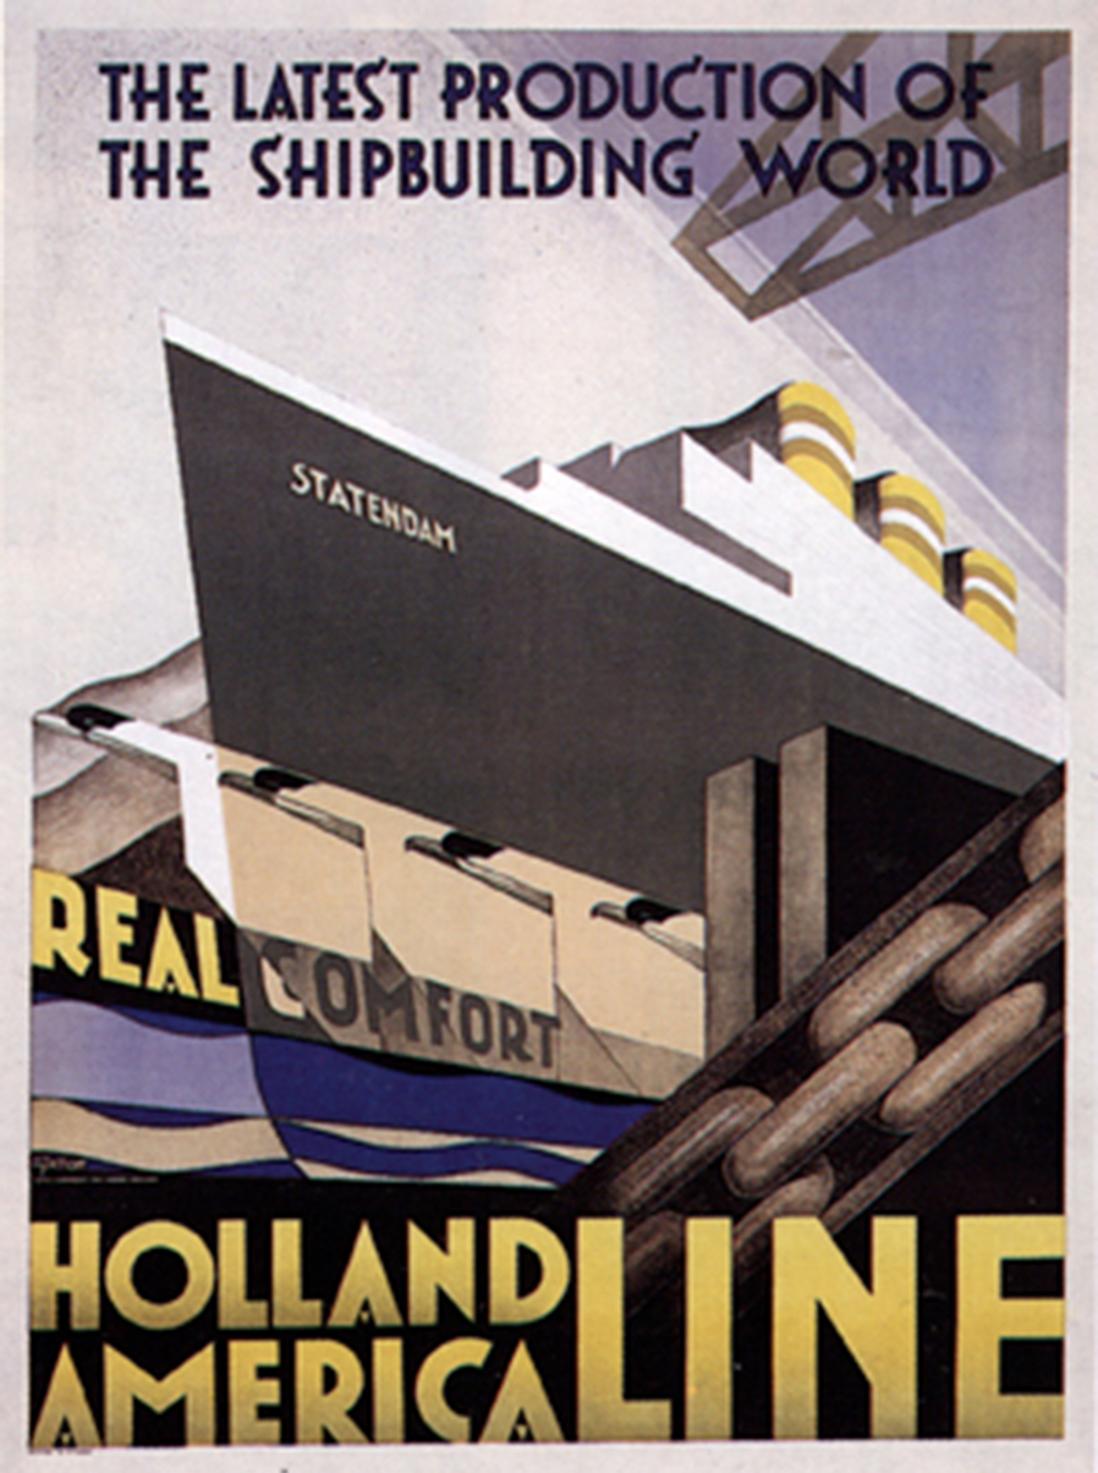 Holland American Line/Statendam - Print by Adriaan Van't Hoff